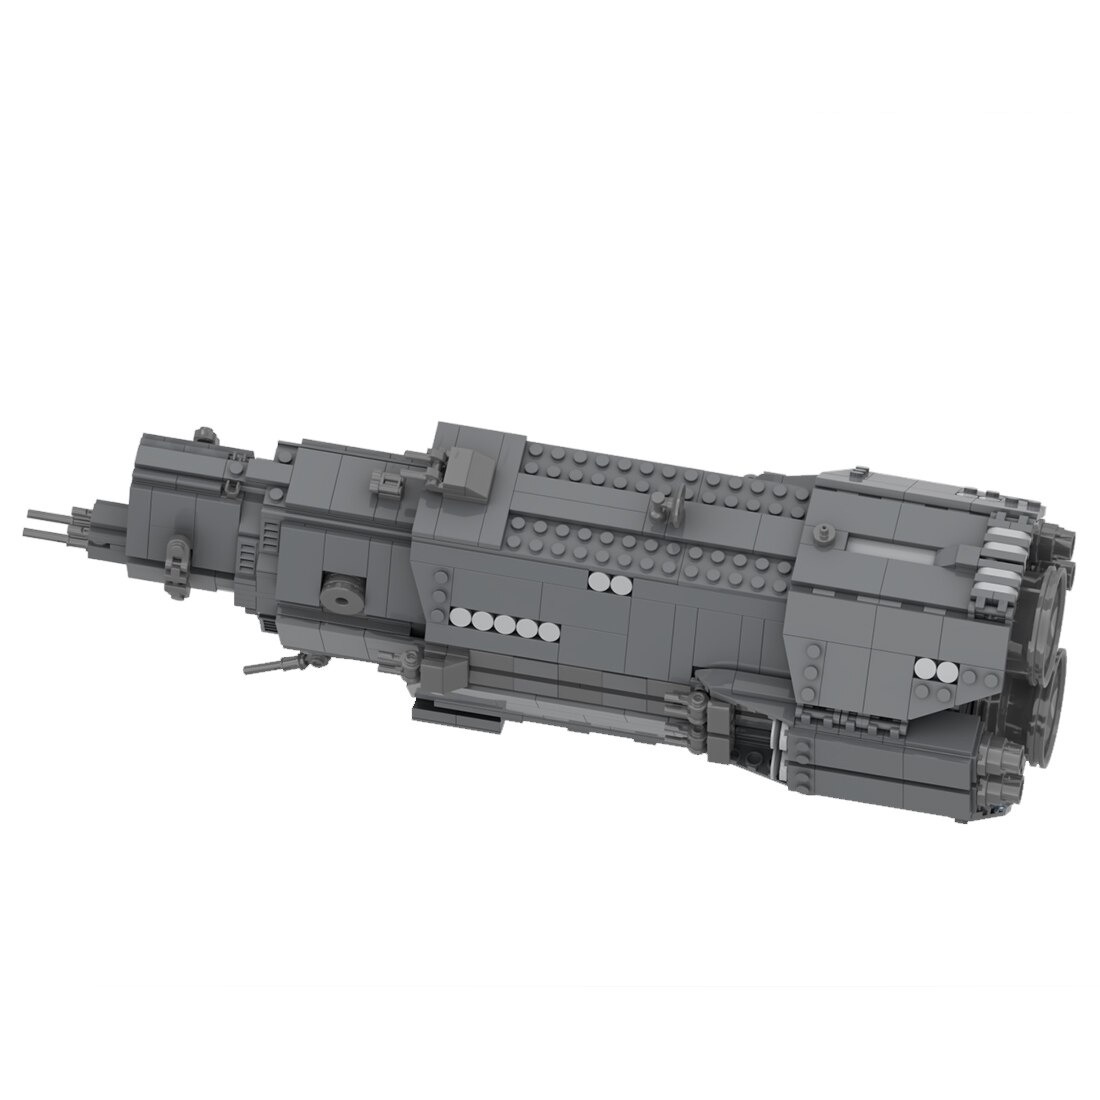 authorized moc 38471 light cruiser model main 4 - WANGE Block